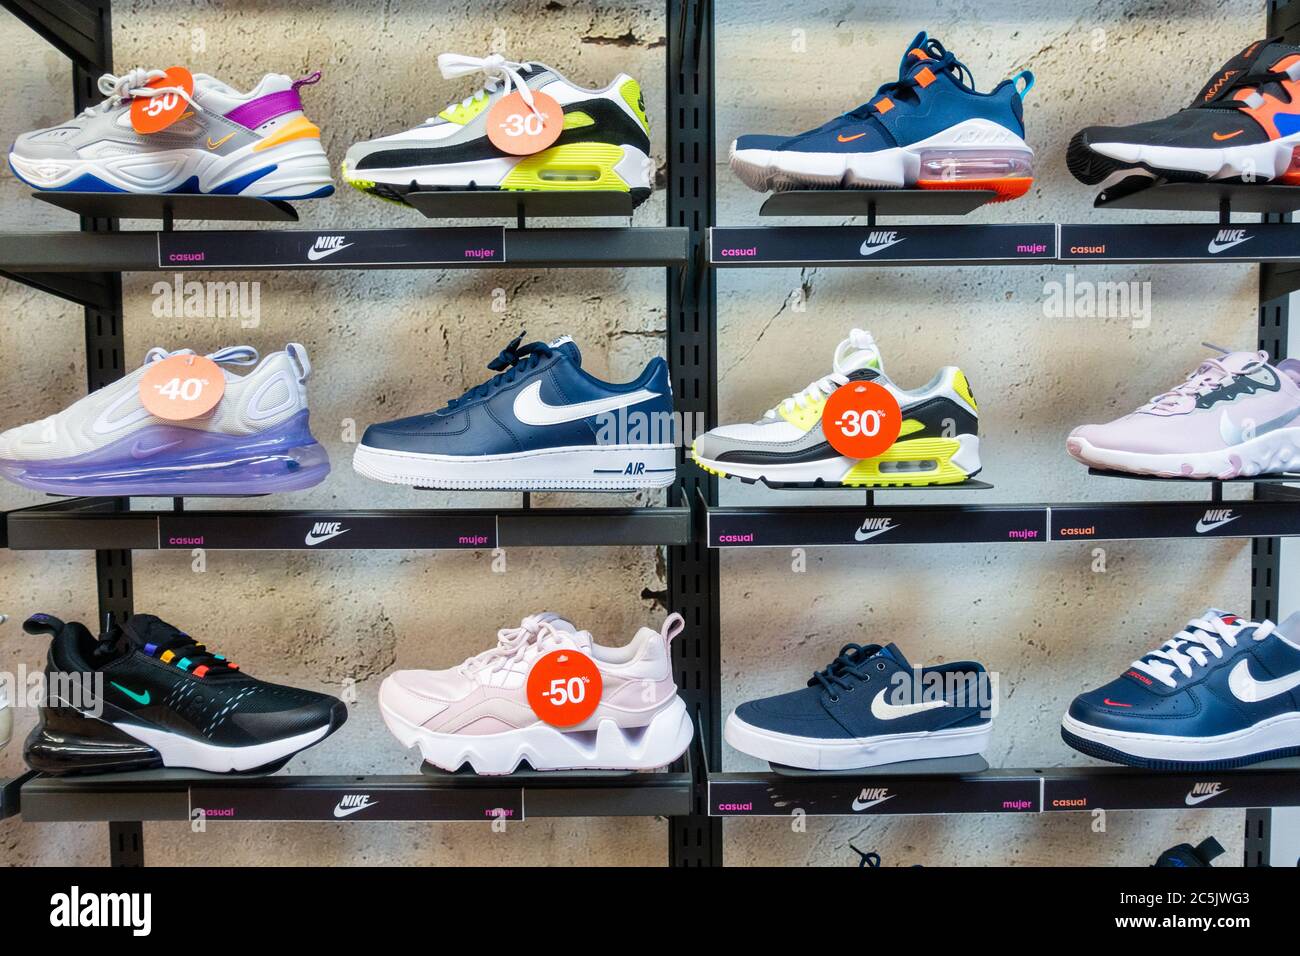 Scarpe Nike, scarpe casual, calzature, esposizione in negozio. Foto Stock